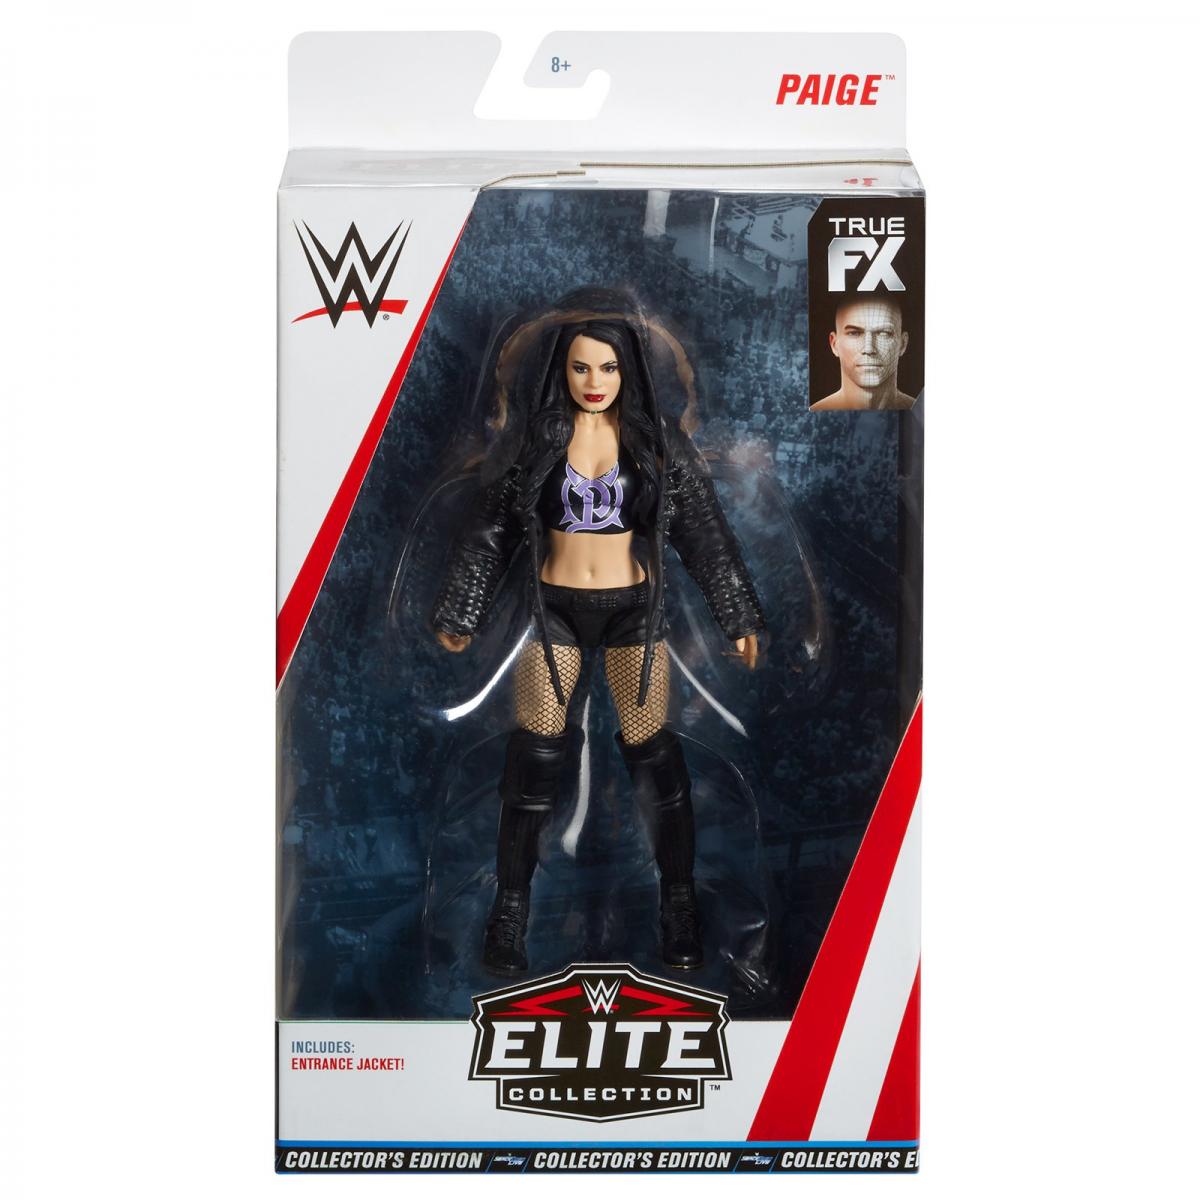 Mattel WWE Elite 71 Loose & Mint Prototype Images (Photos) - Wrestlezone